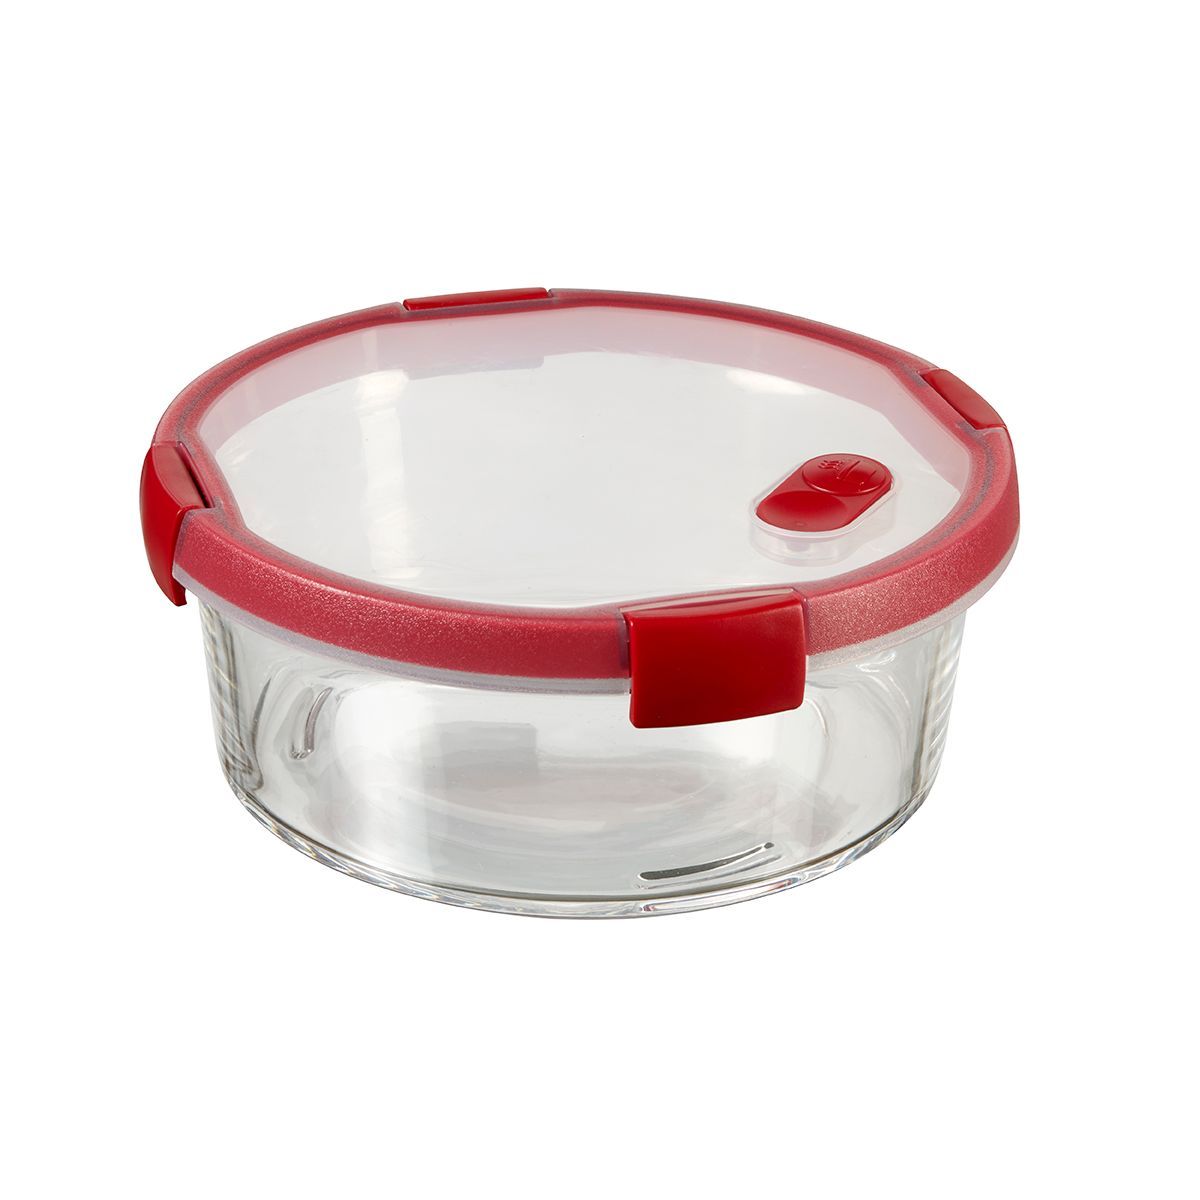 Boite ronde en verre avec couvercle en silicone rose 360 ml Point